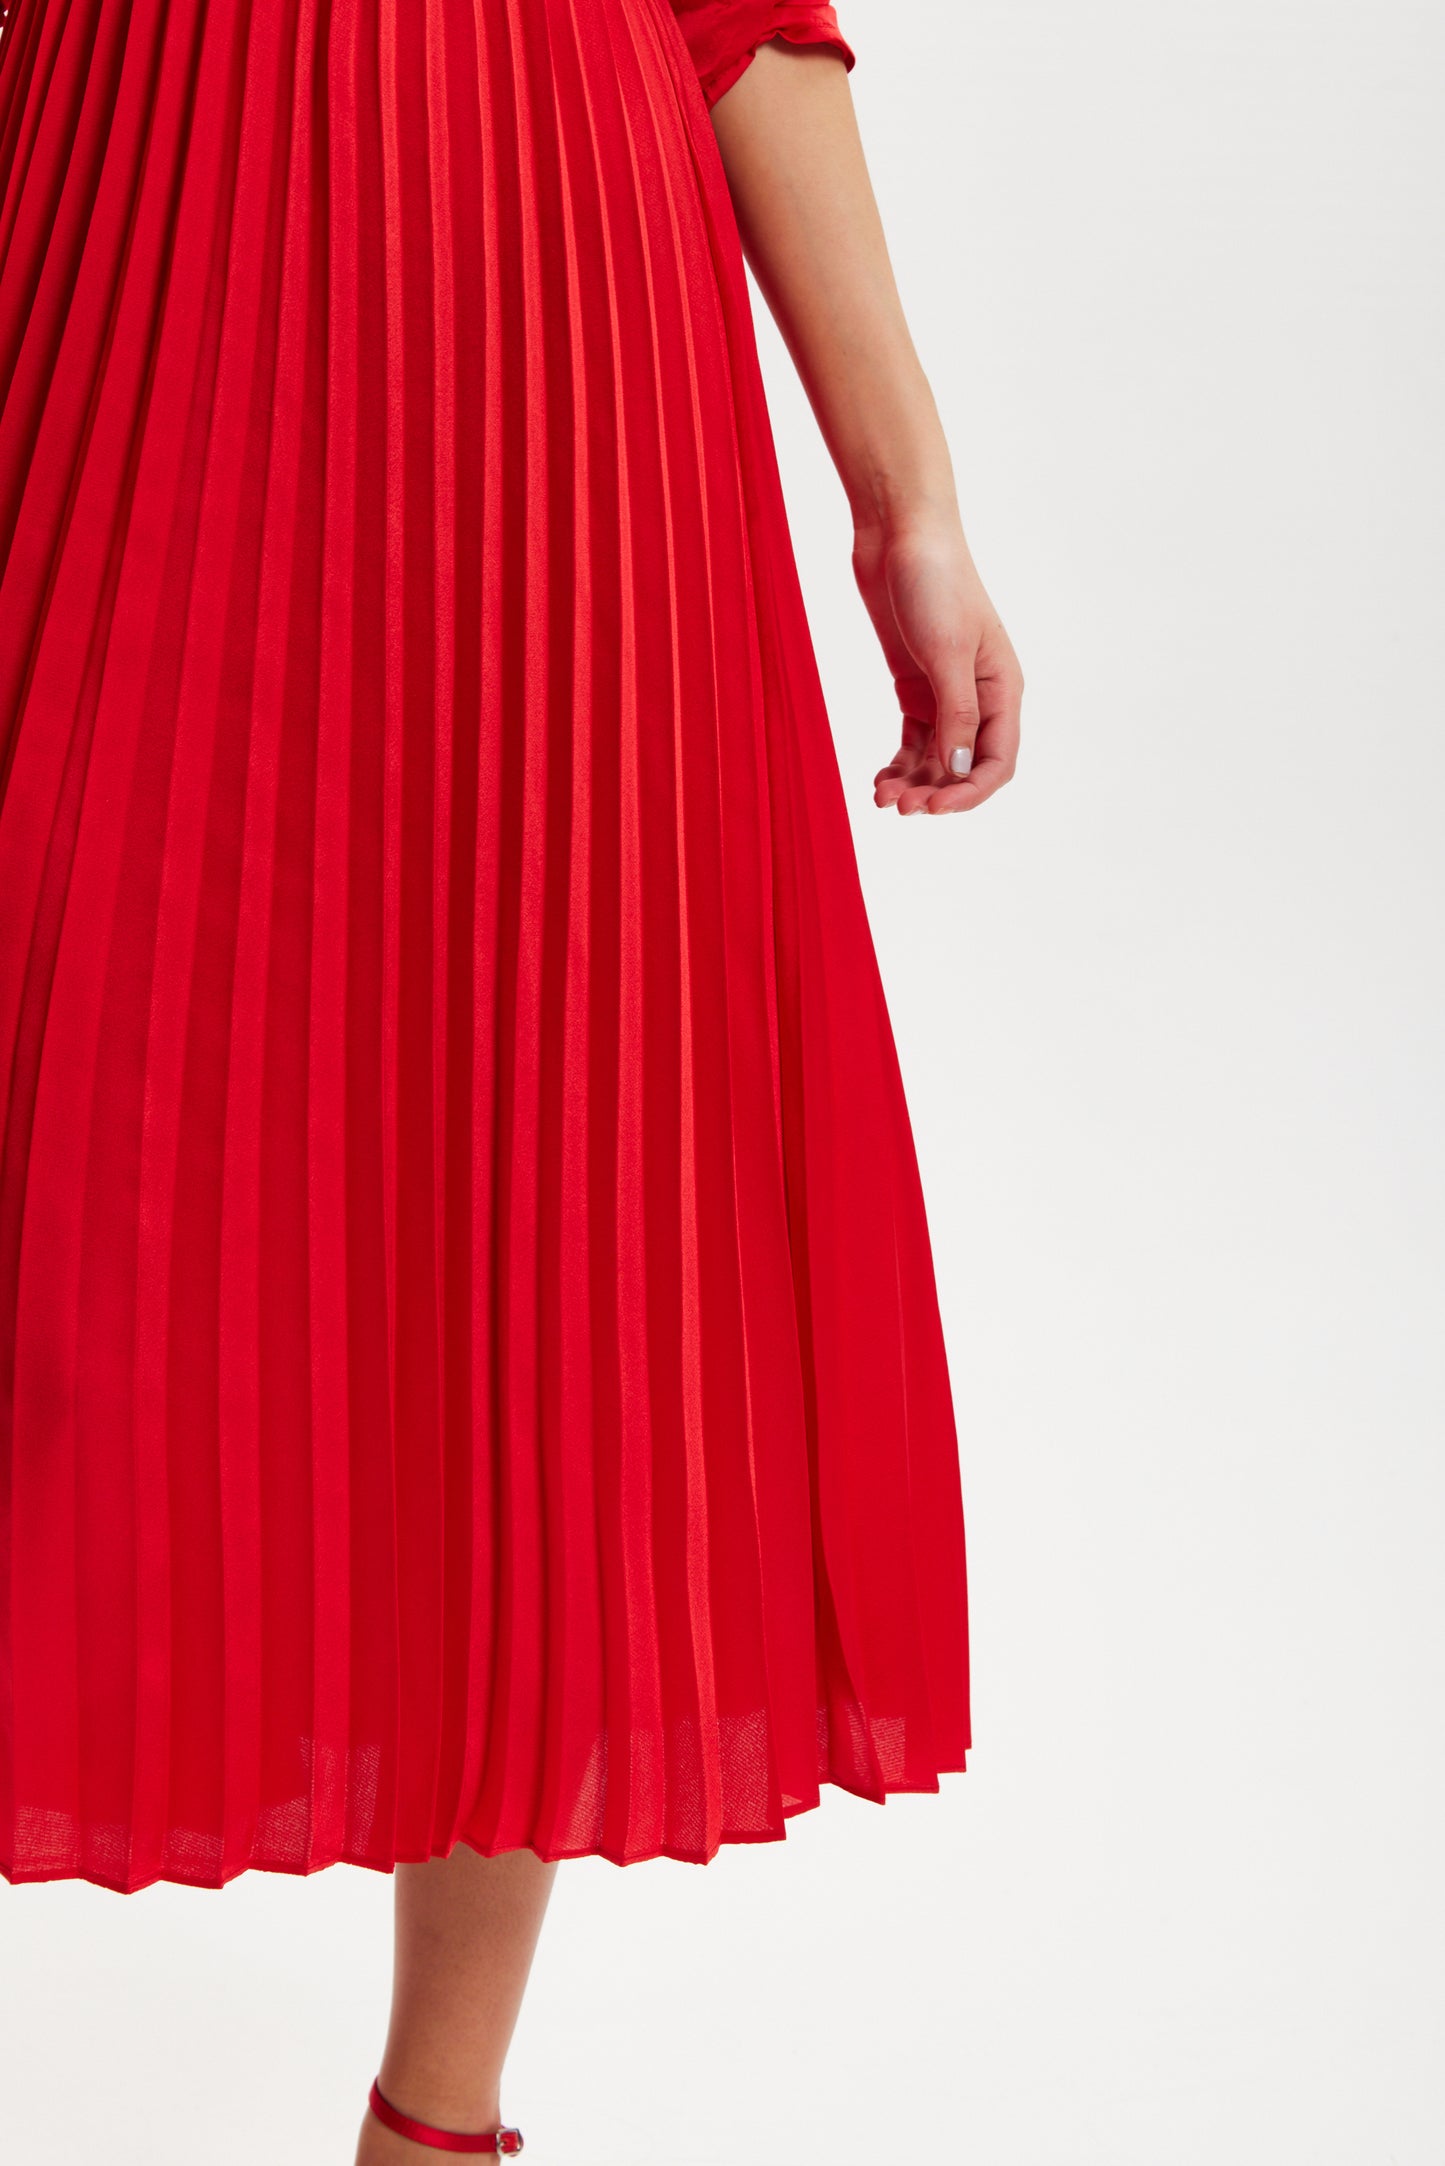 
                  
                    Liquorish Red Midi Dress With Pleat Details
                  
                